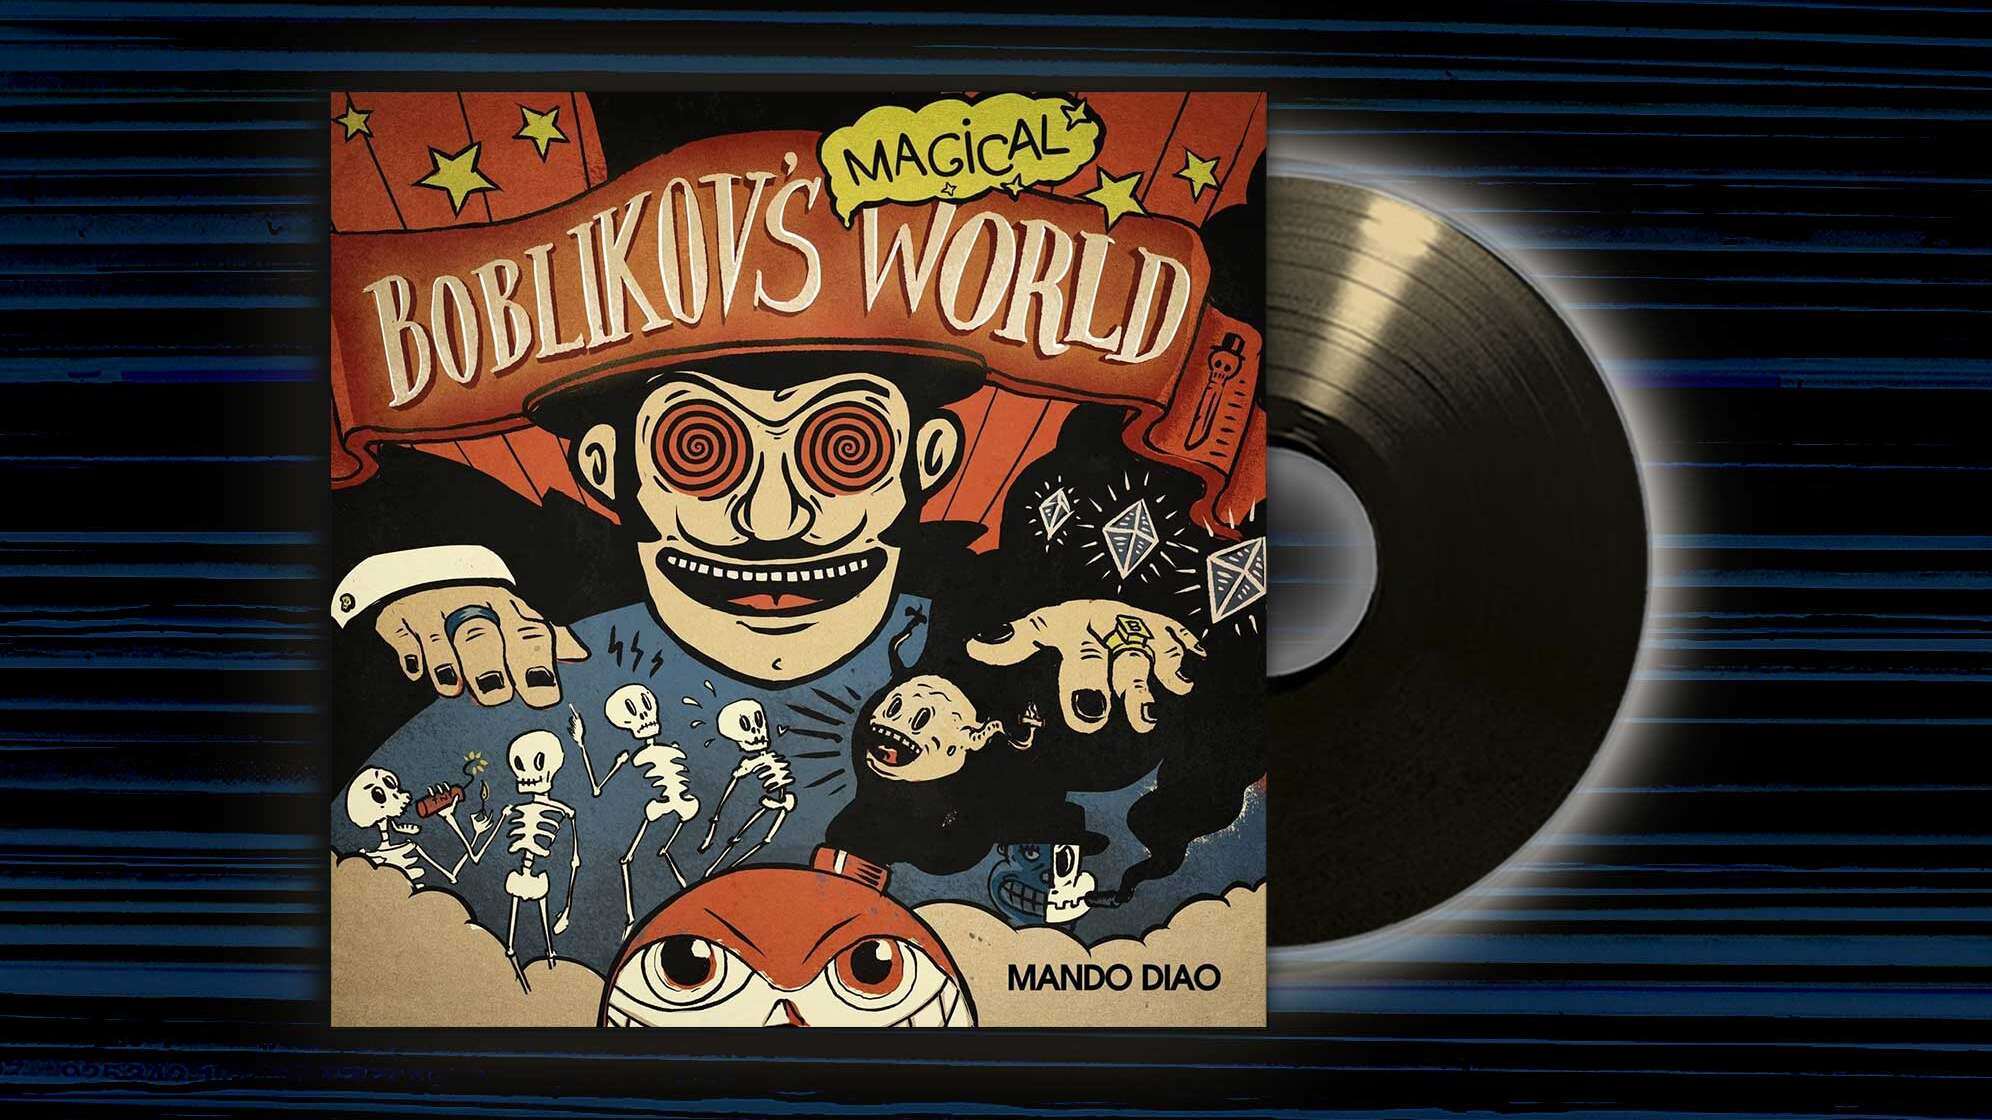 Albumcover von Mando Diao "Boblikov's Magical World"